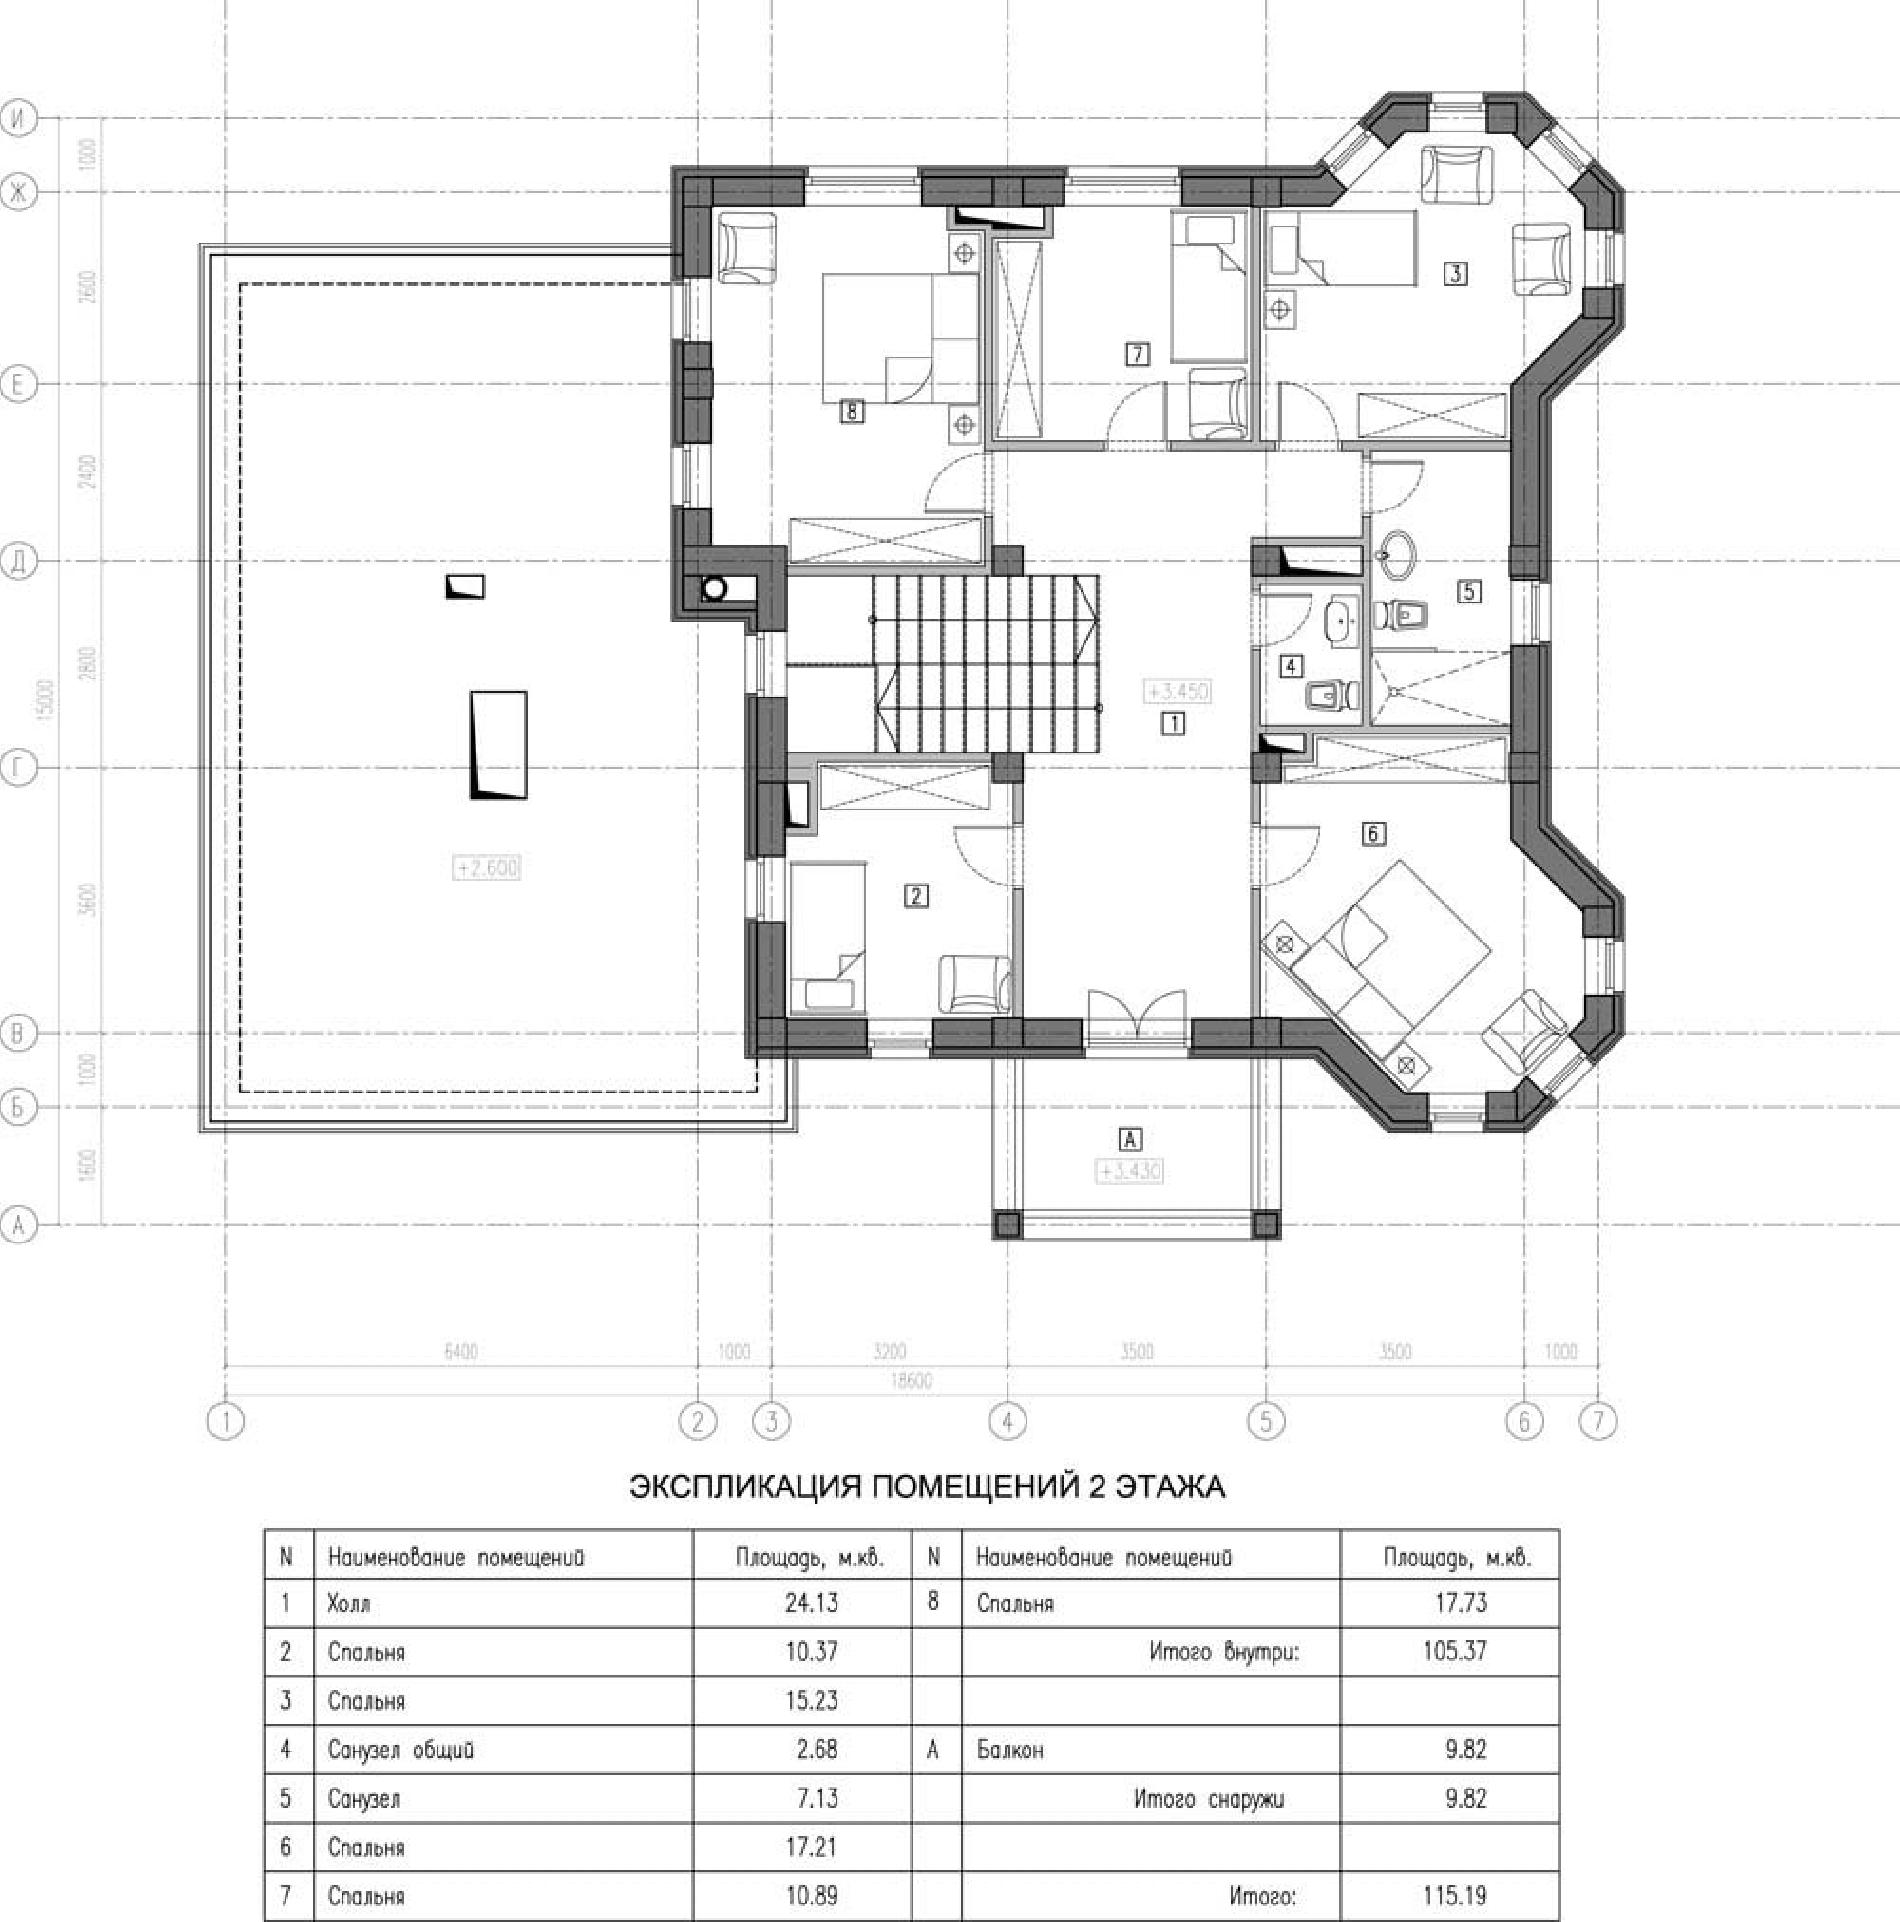 Планировка проекта дома №kr-467 kr-467_p2-min.jpg